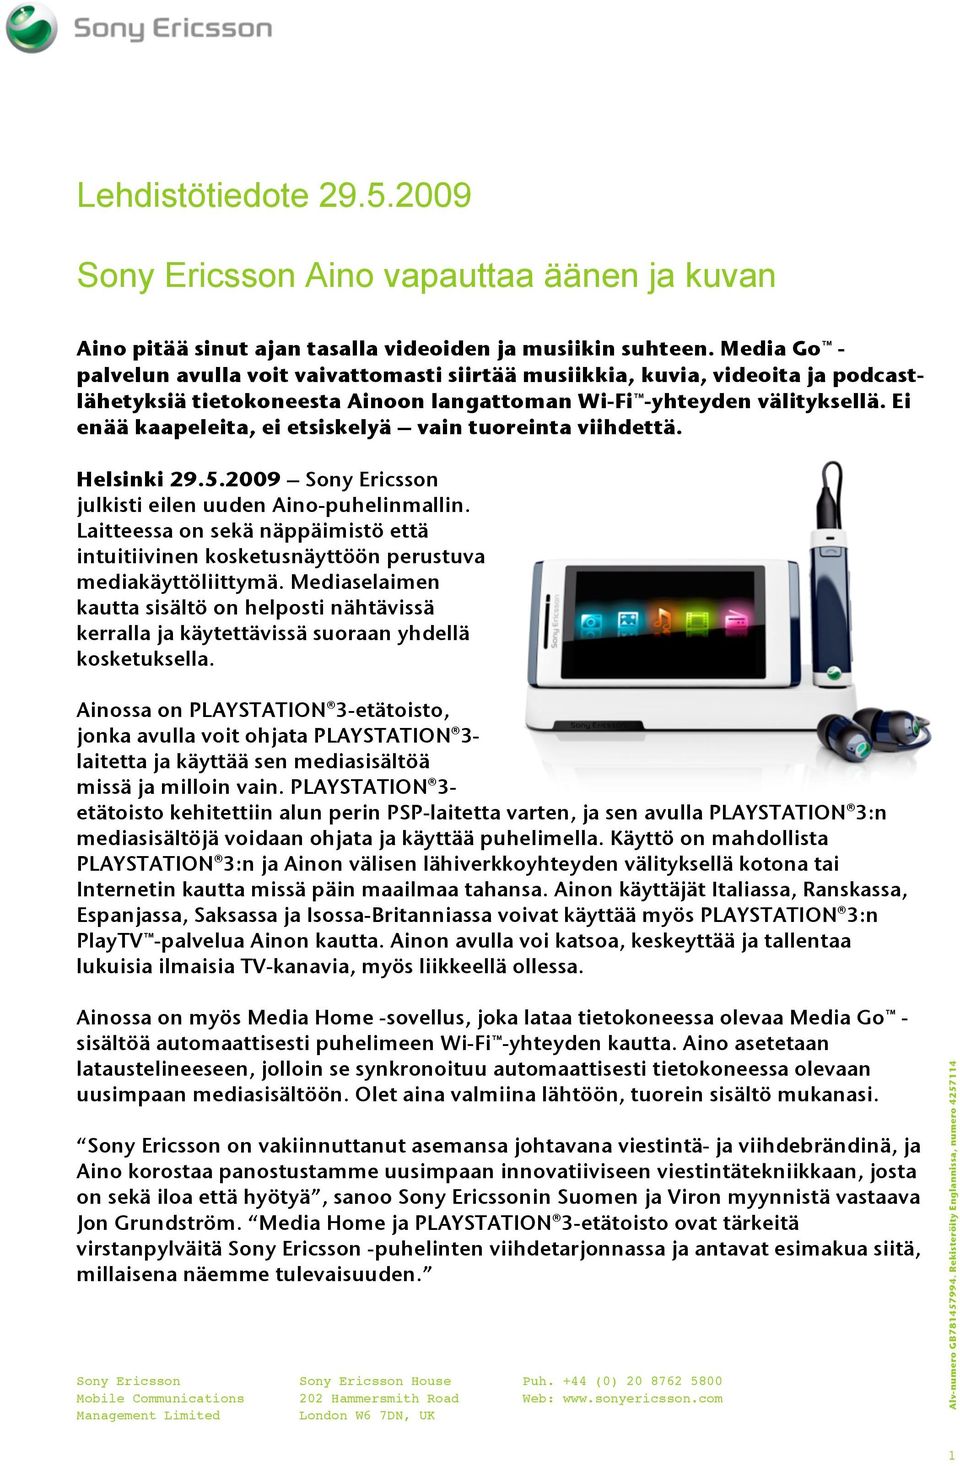 Ei enää kaapeleita, ei etsiskelyä vain tuoreinta viihdettä. Helsinki 29.5.2009 Sony Ericsson julkisti eilen uuden Aino-puhelinmallin.